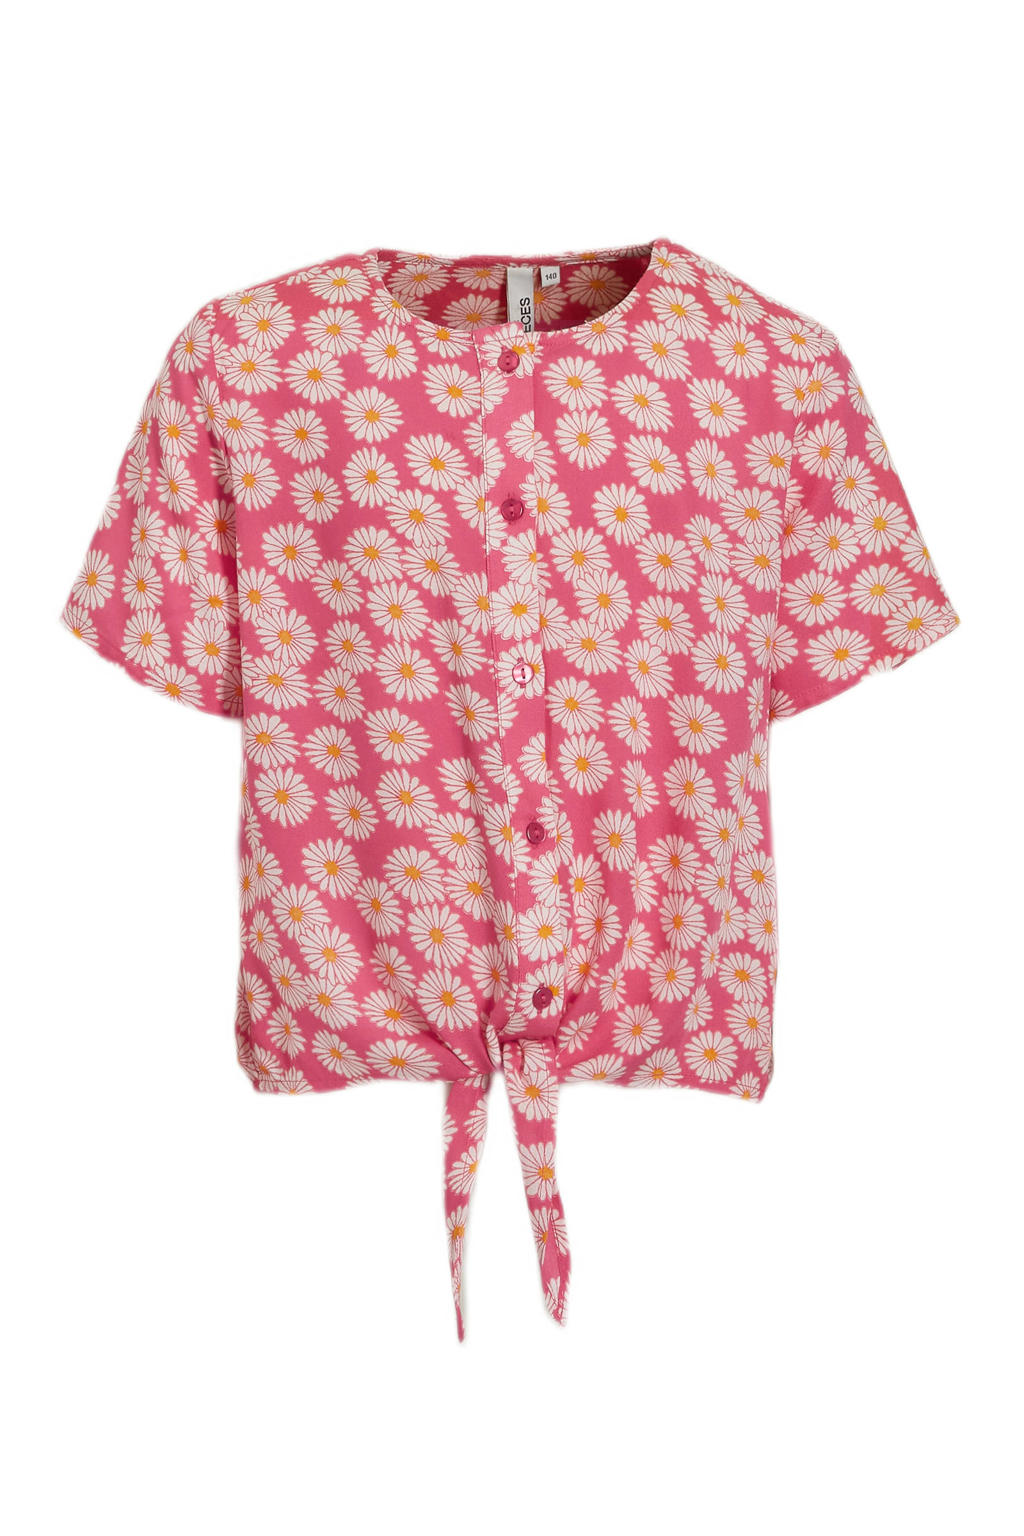 PIECES KIDS gebloemde blouse LPNYA roze/wit/geel